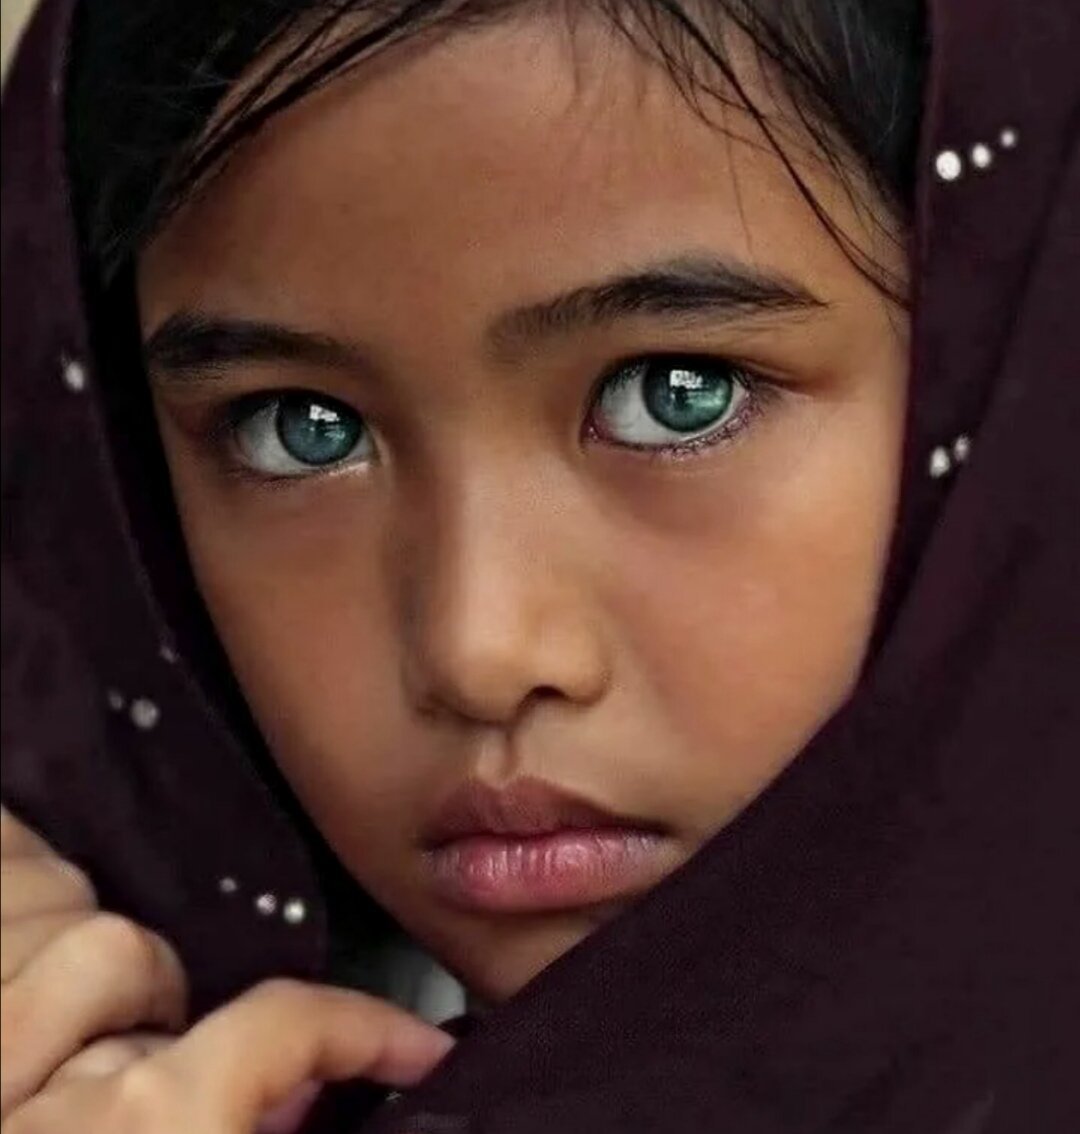 Самого редкого человека. Необычные глаза. Красивые глаза. Девочка с необычными глазами. Сапфировые глаза.